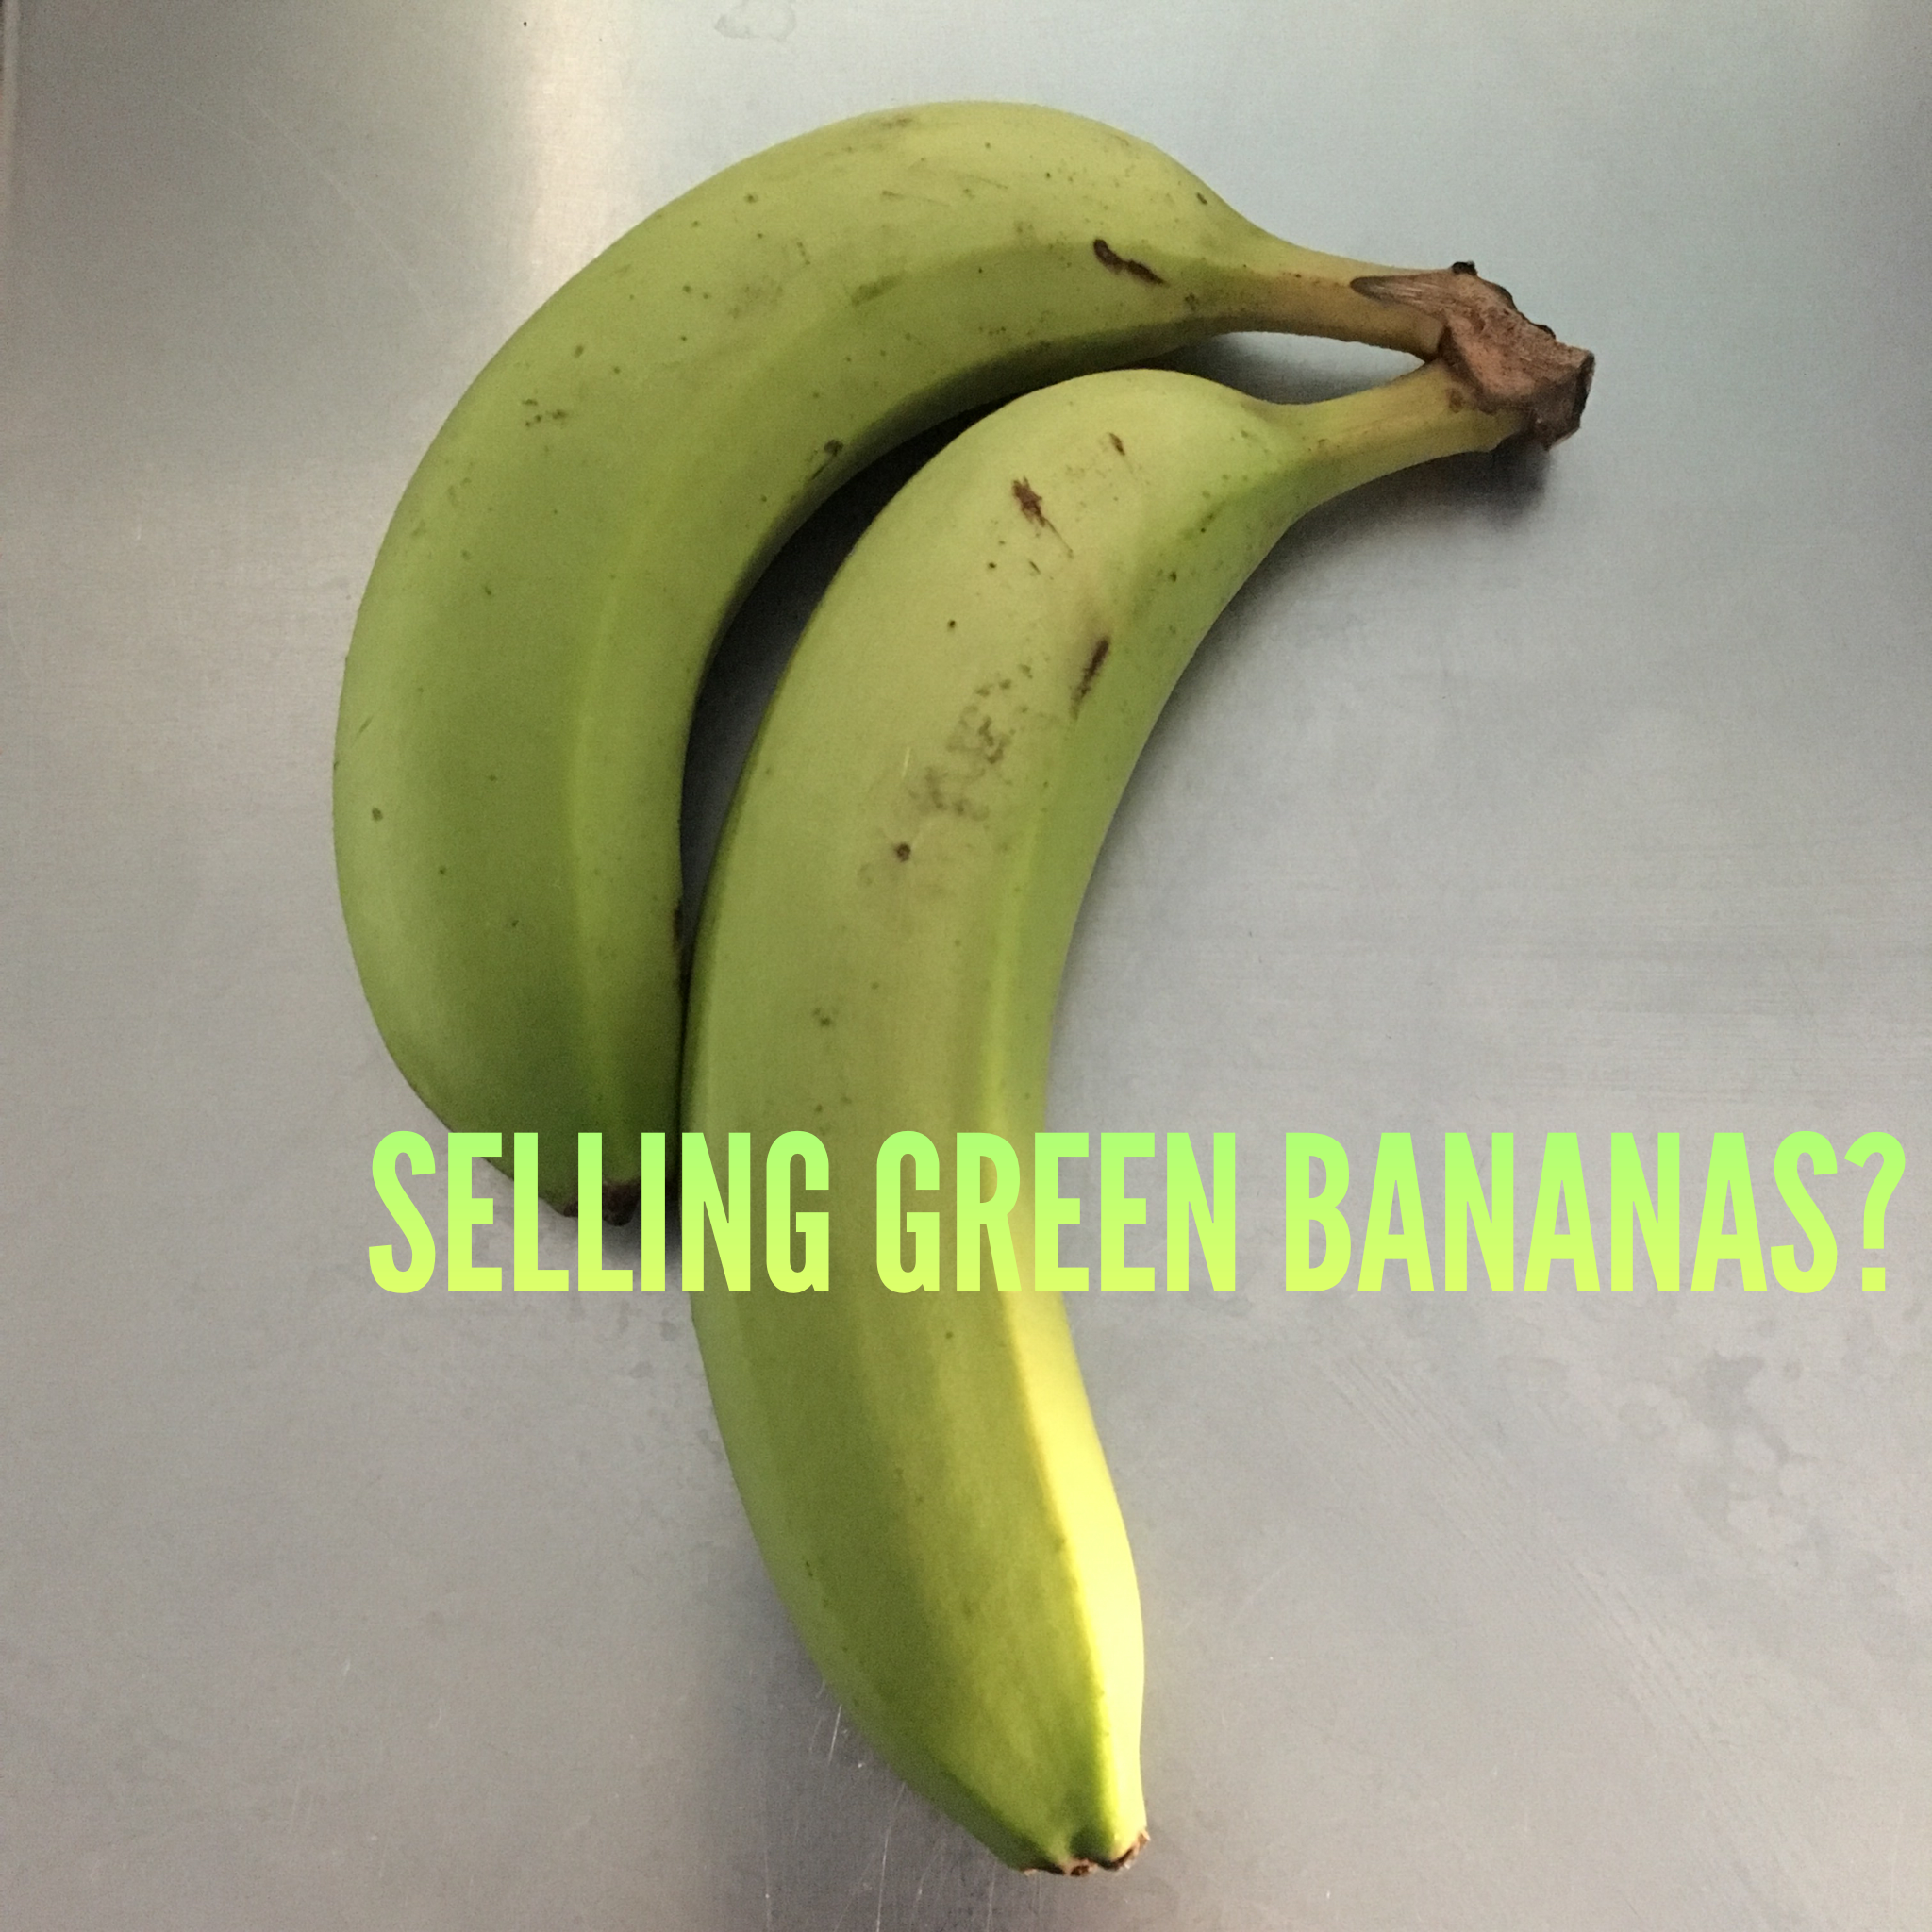 Don't sell green bananas. - Sponsorship Strategist